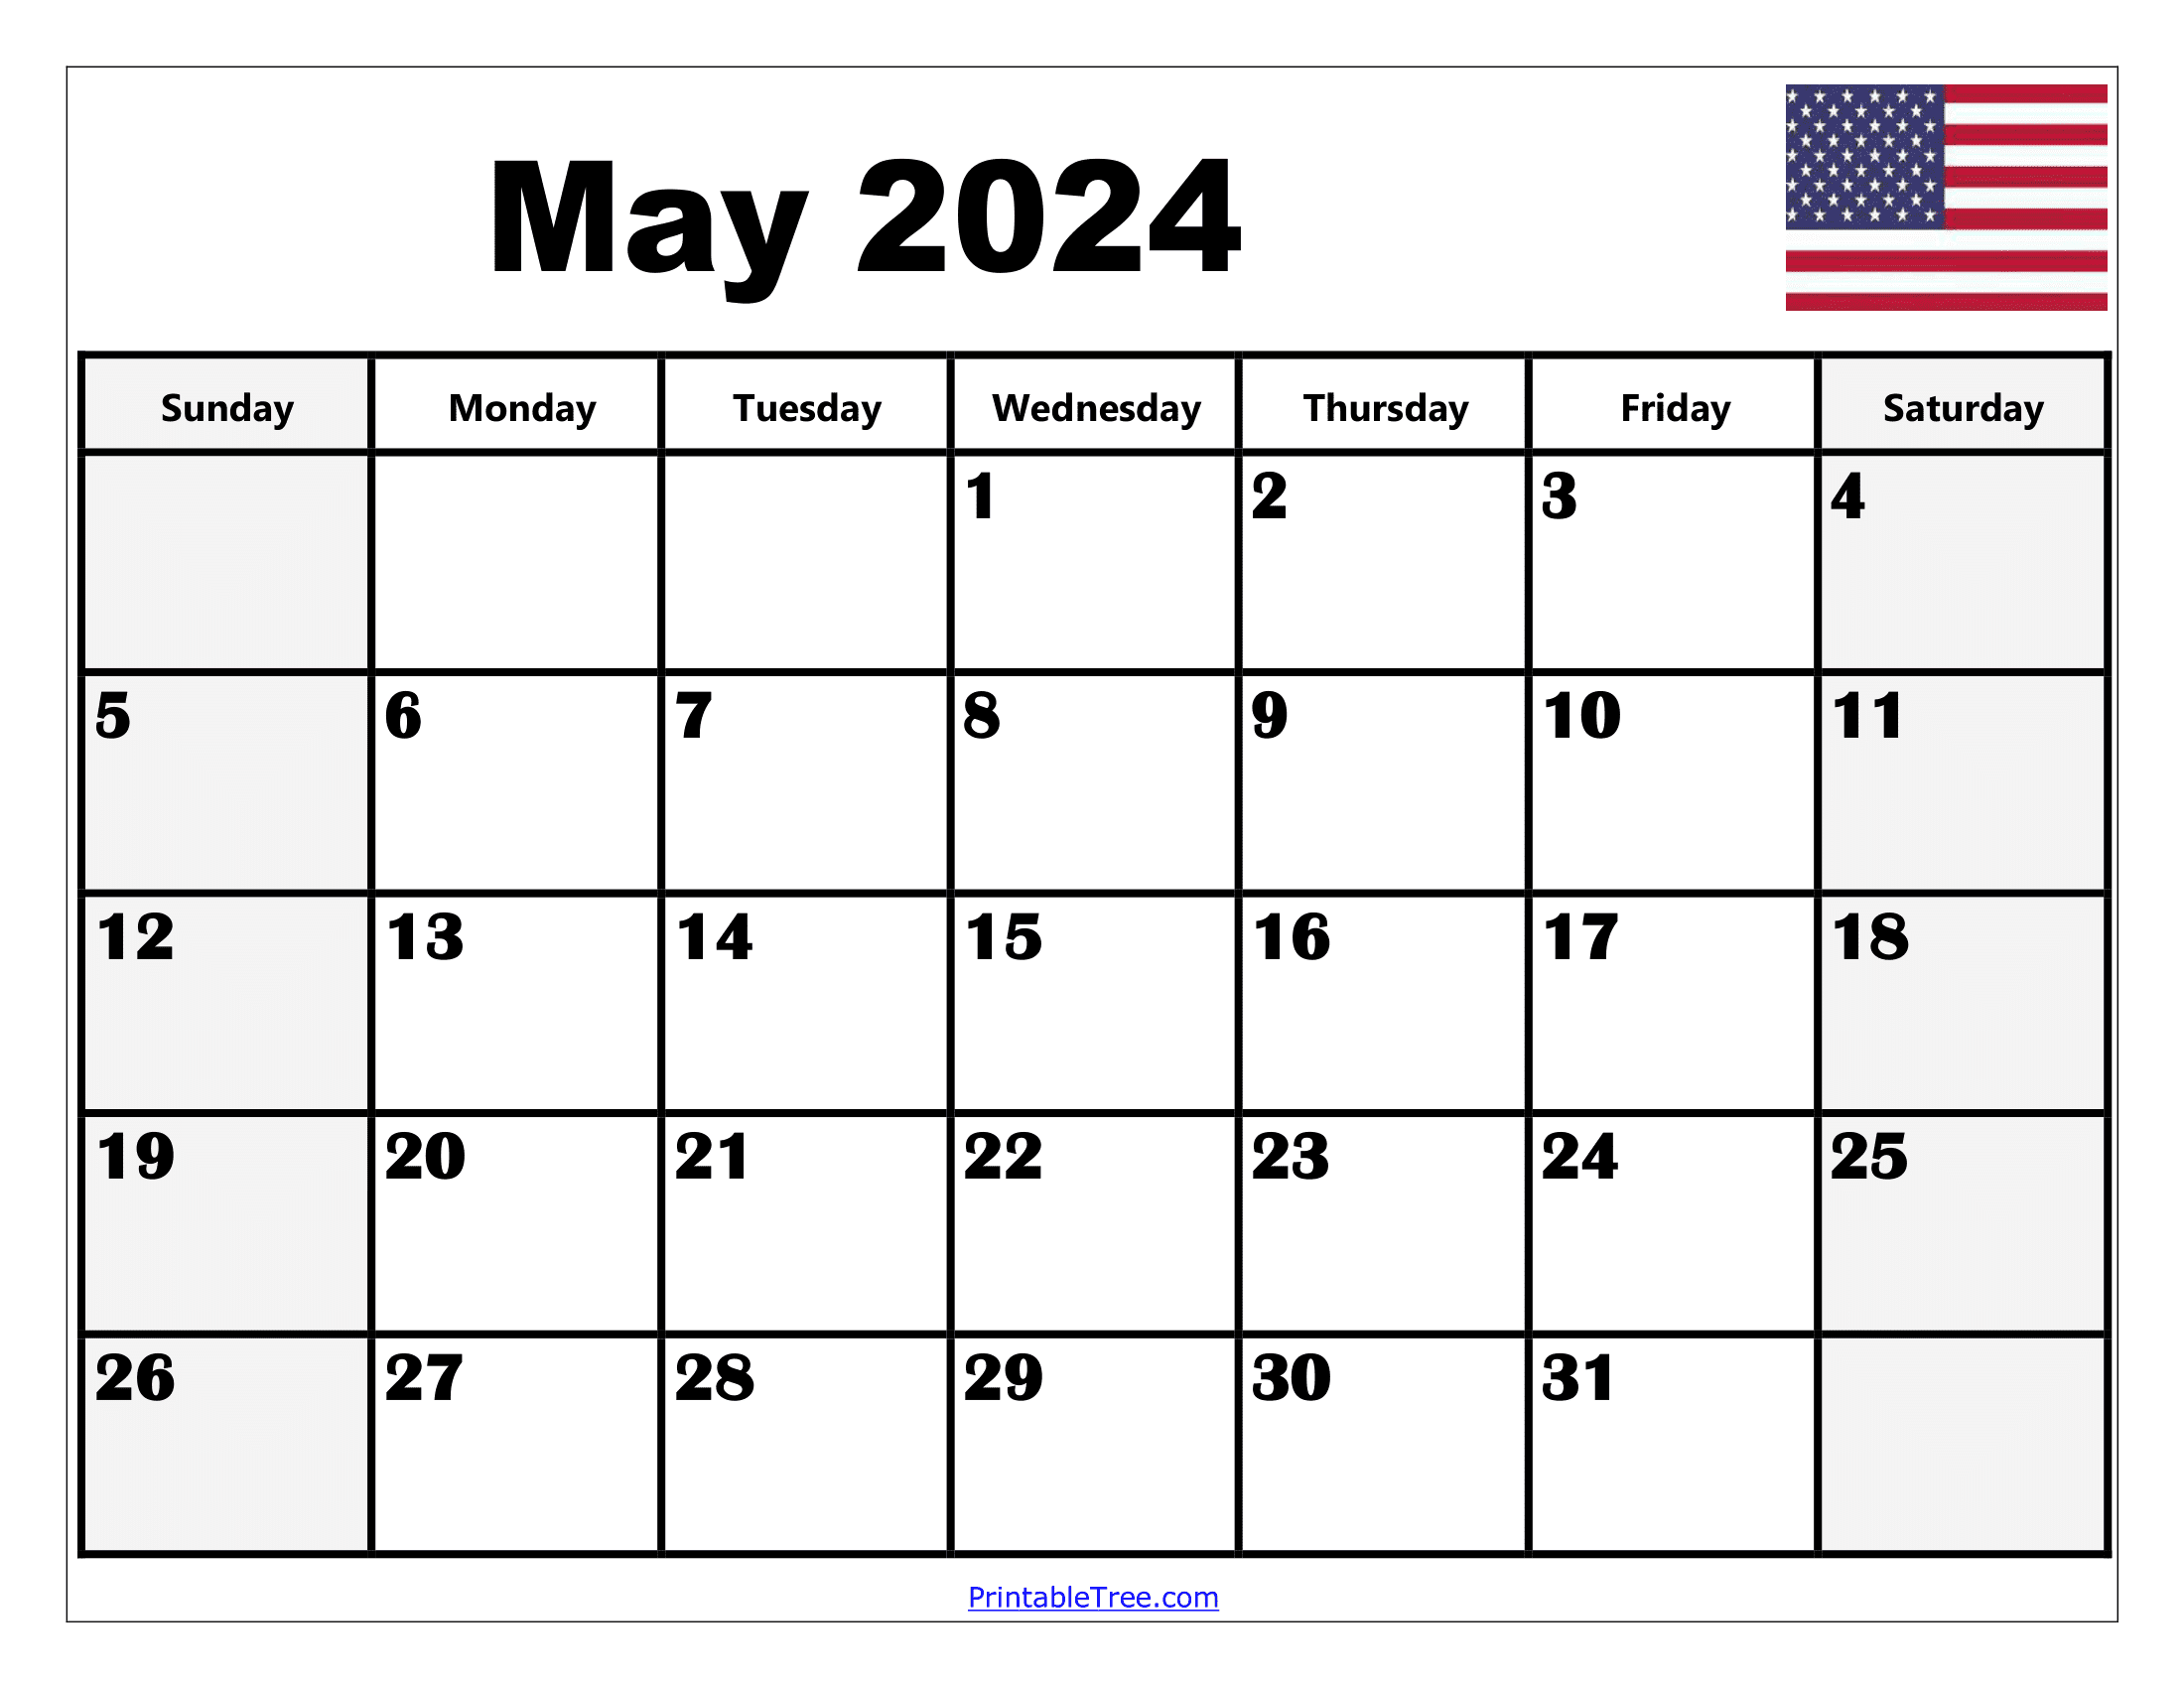 Calendar May 2024 - Printable Calendar Templates Online in Free Printable Calendar 2024 May With Holidays